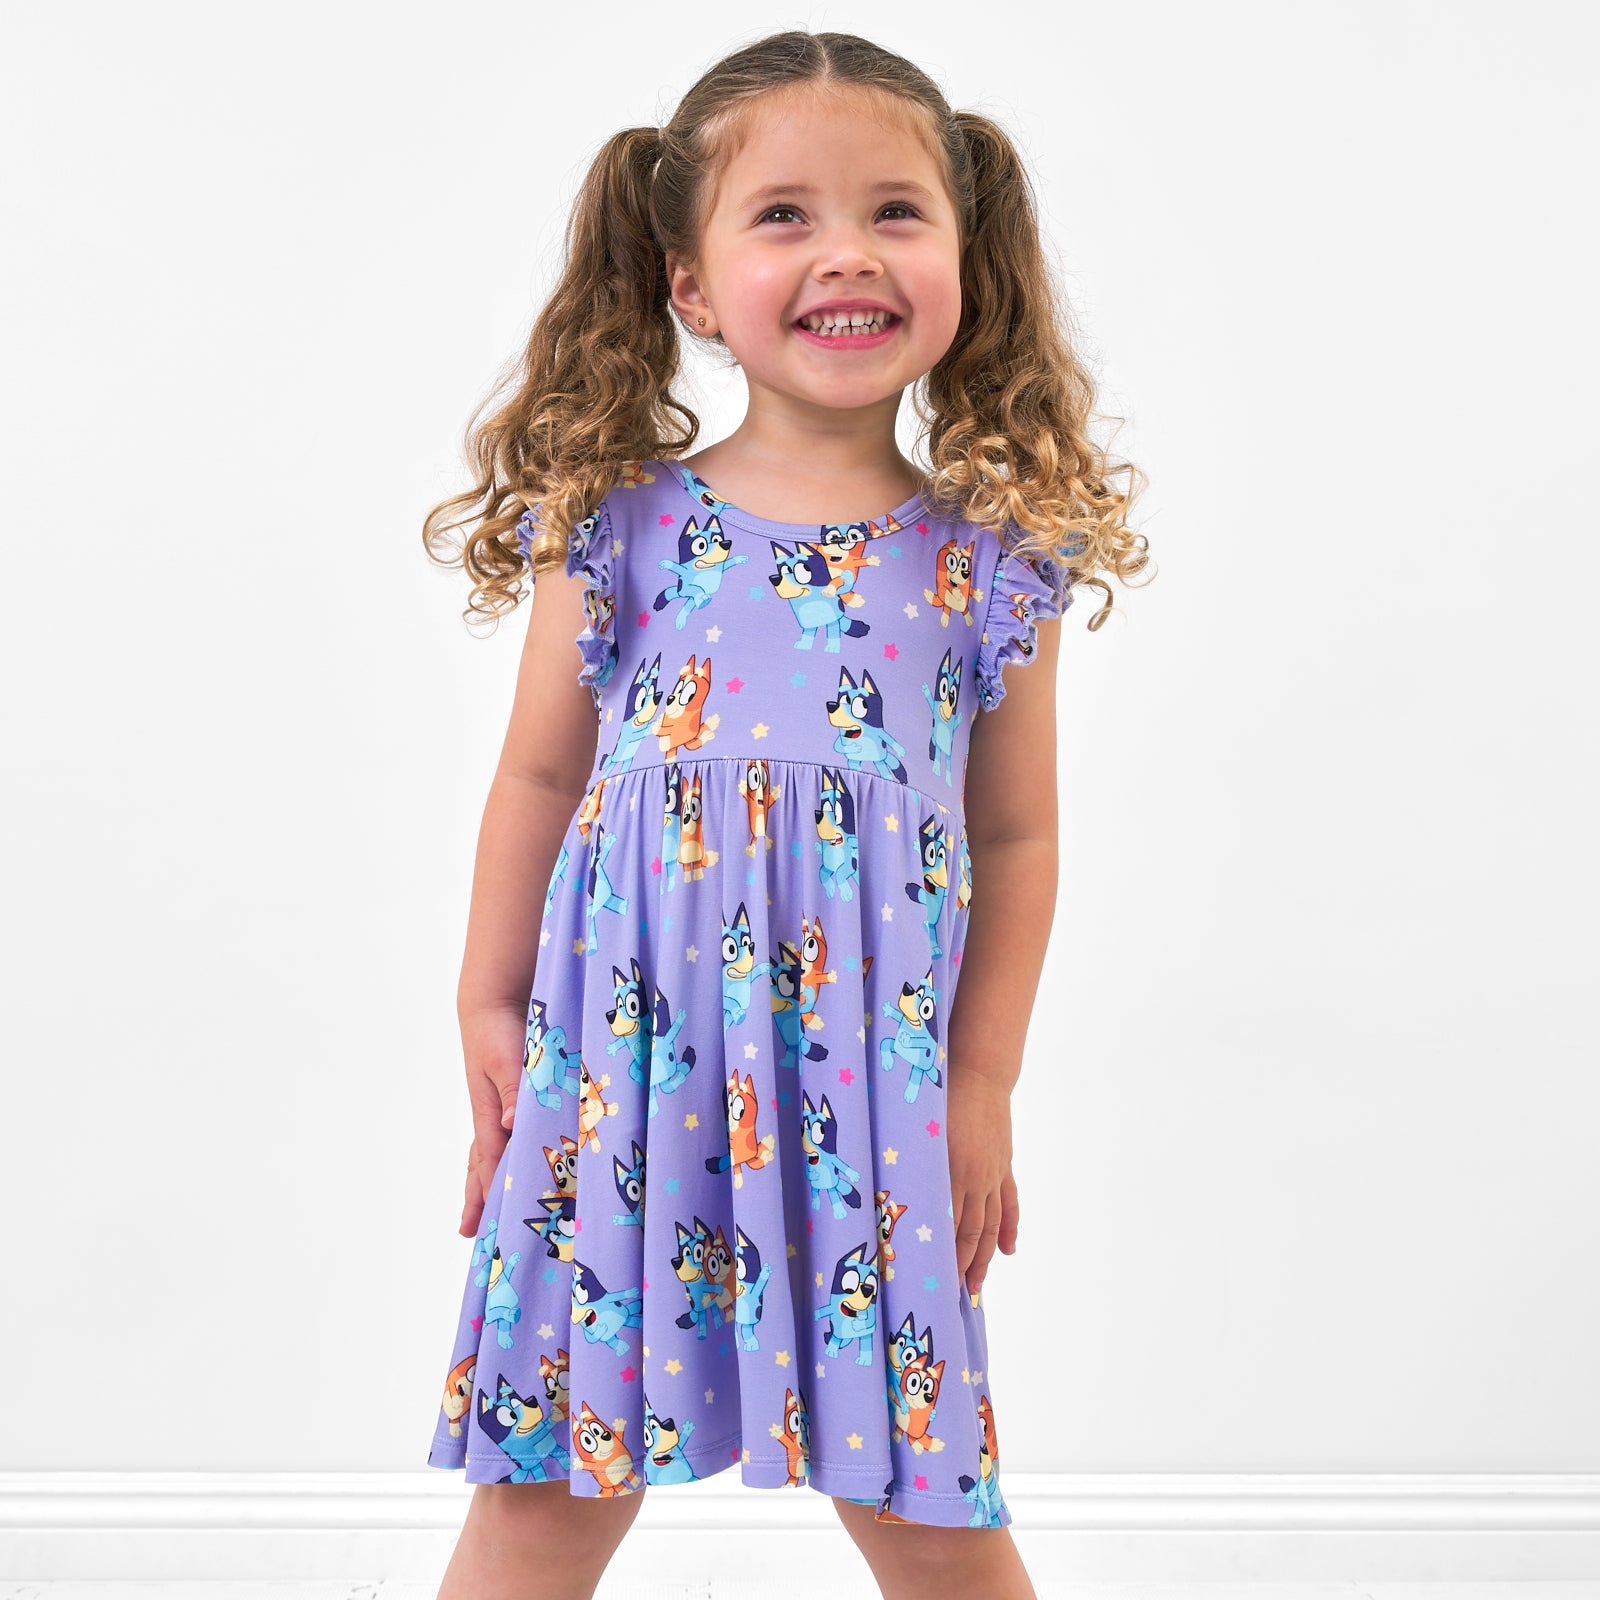 Child wearing a Bluey flutter twirl dress